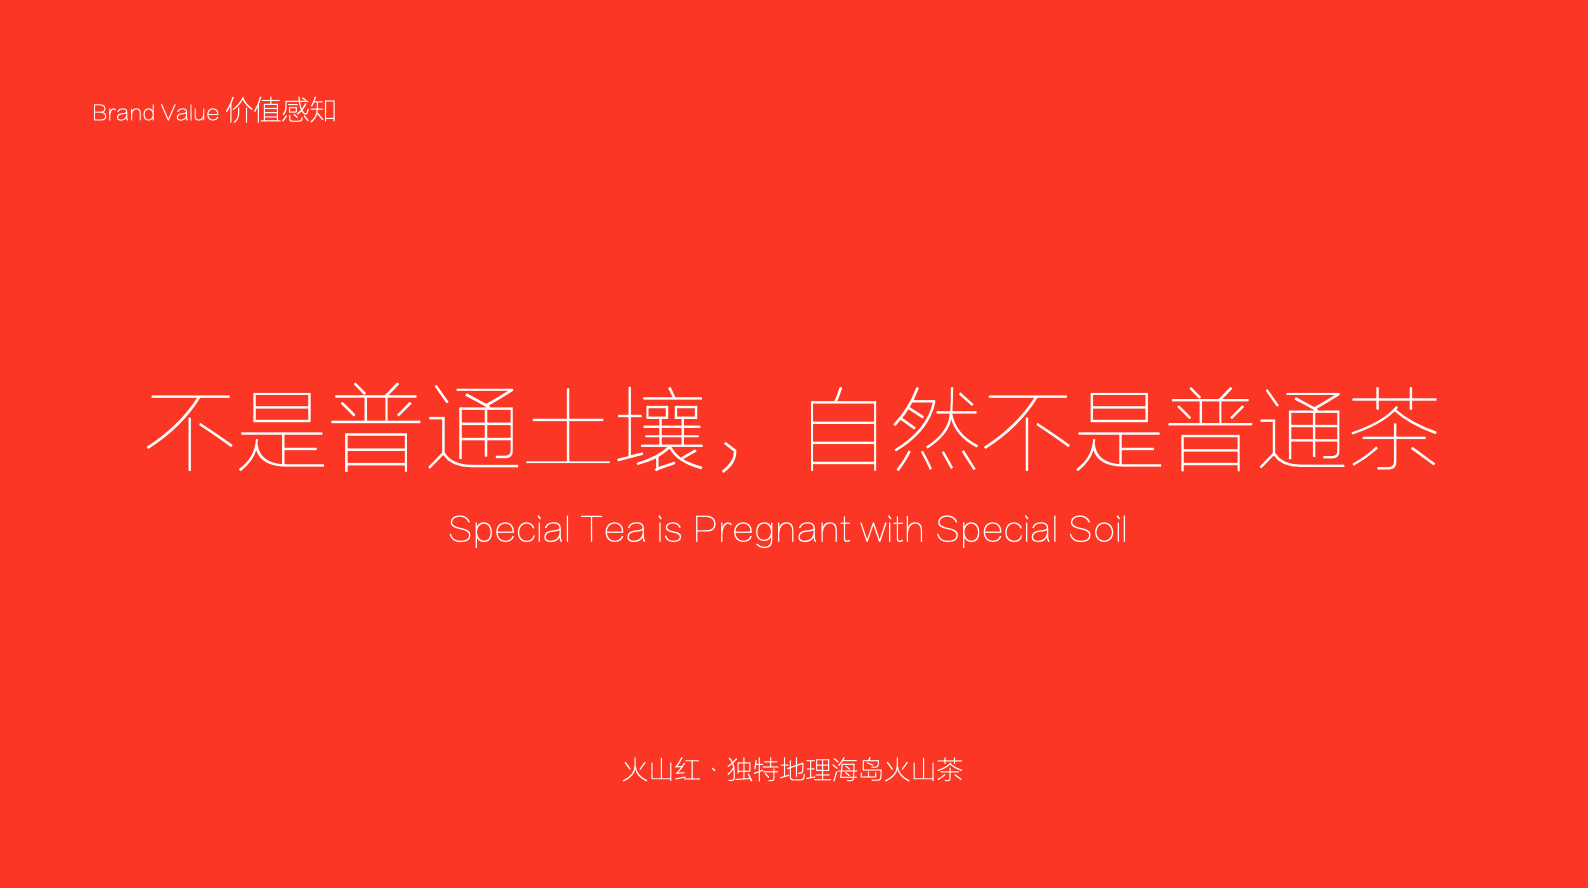 食品品牌策劃設計-茶葉品牌策劃-杭州品牌營銷咨詢